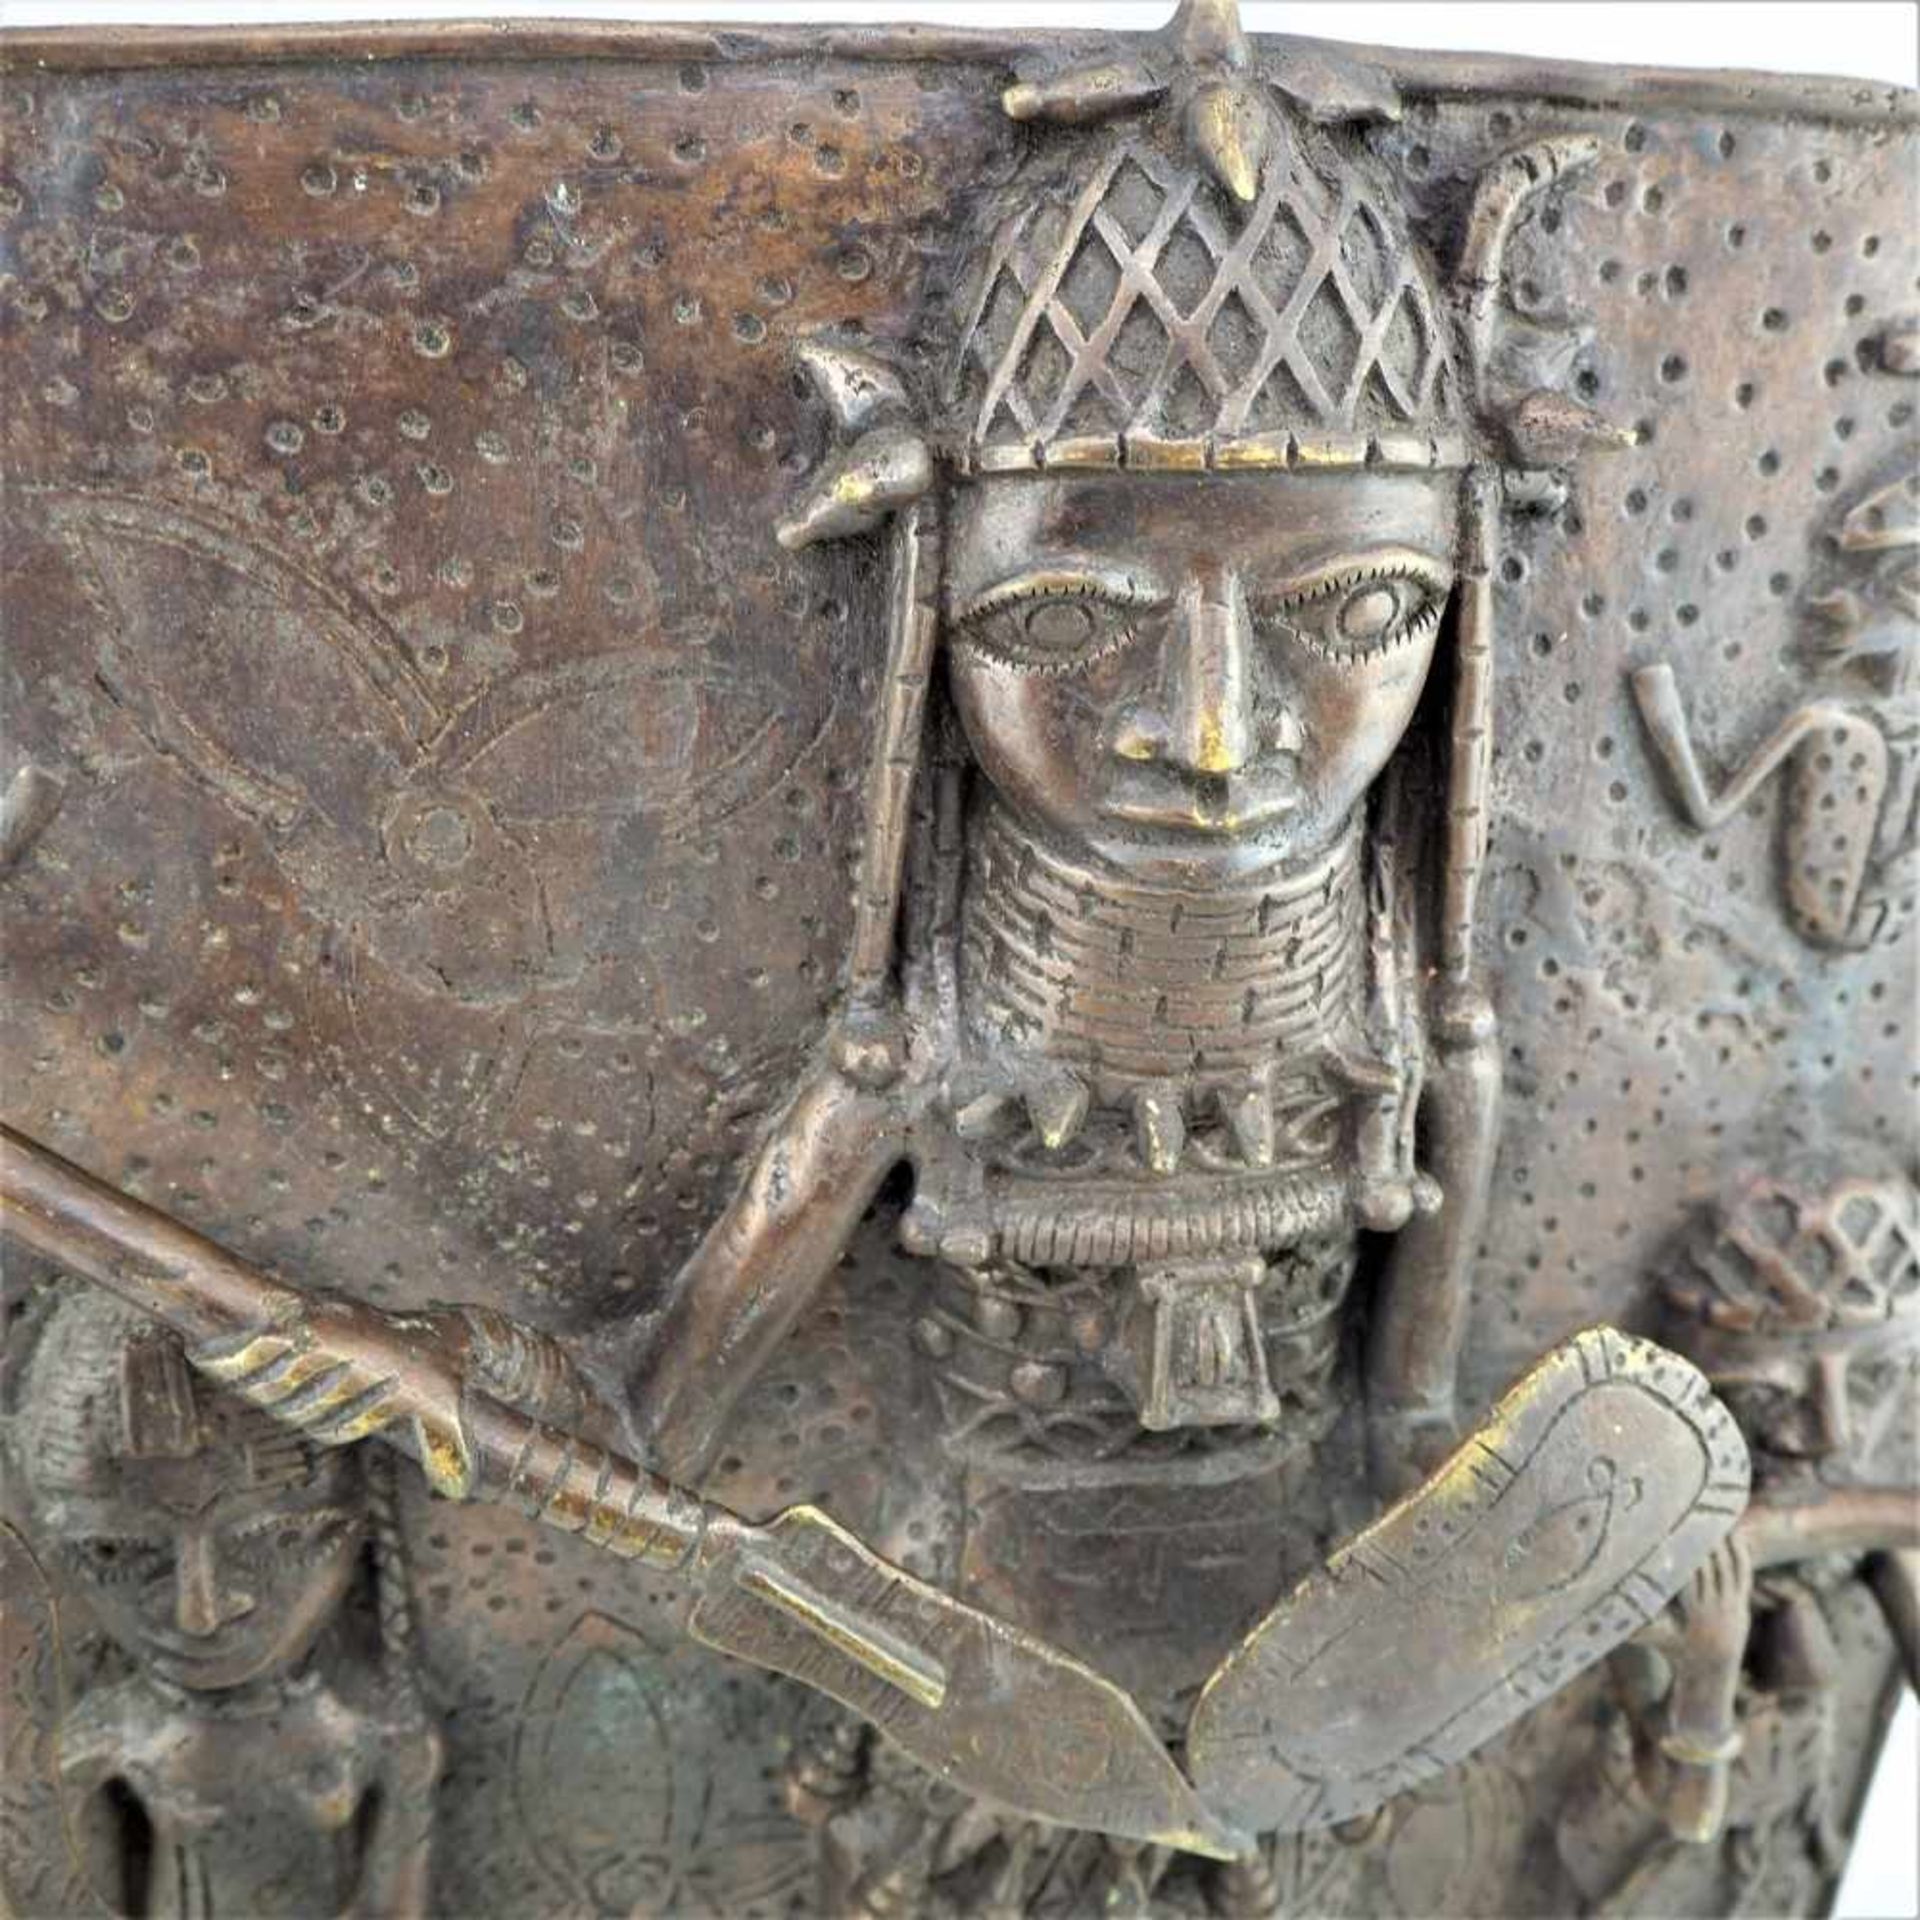 Benin BronzereliefMehrfiguriges Bronzerelief aus Benin, Westafrika. Patina. Ausbrüche. 8,15kg. H. - Bild 2 aus 3